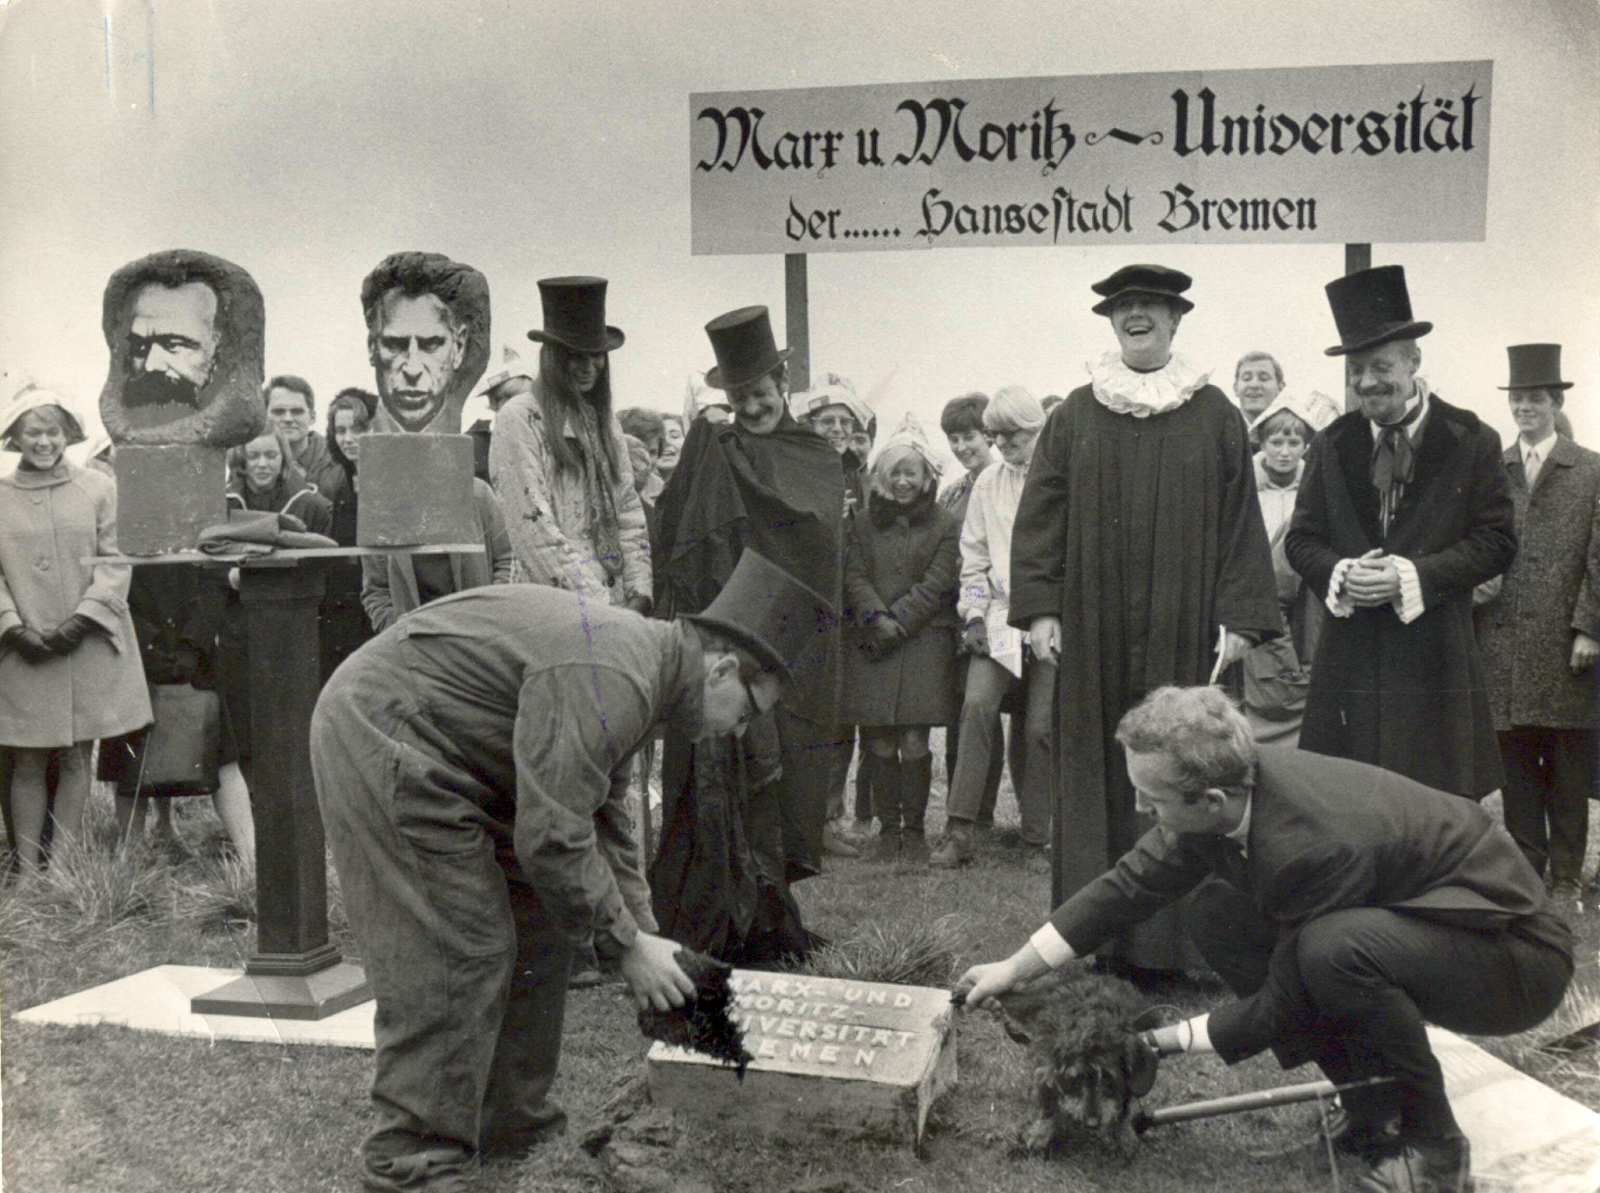 Im Vordergrund setzen zwei Männer den Grundstein für die Universität in die Wiese ein. Ein Dackel wird von einem der Männer genötigt, sein Bein an ebendiesem Grundstein zu heben. Links stehen auf einem Sockel die Büsten von Karl Marx und Moritz Thape. Lin